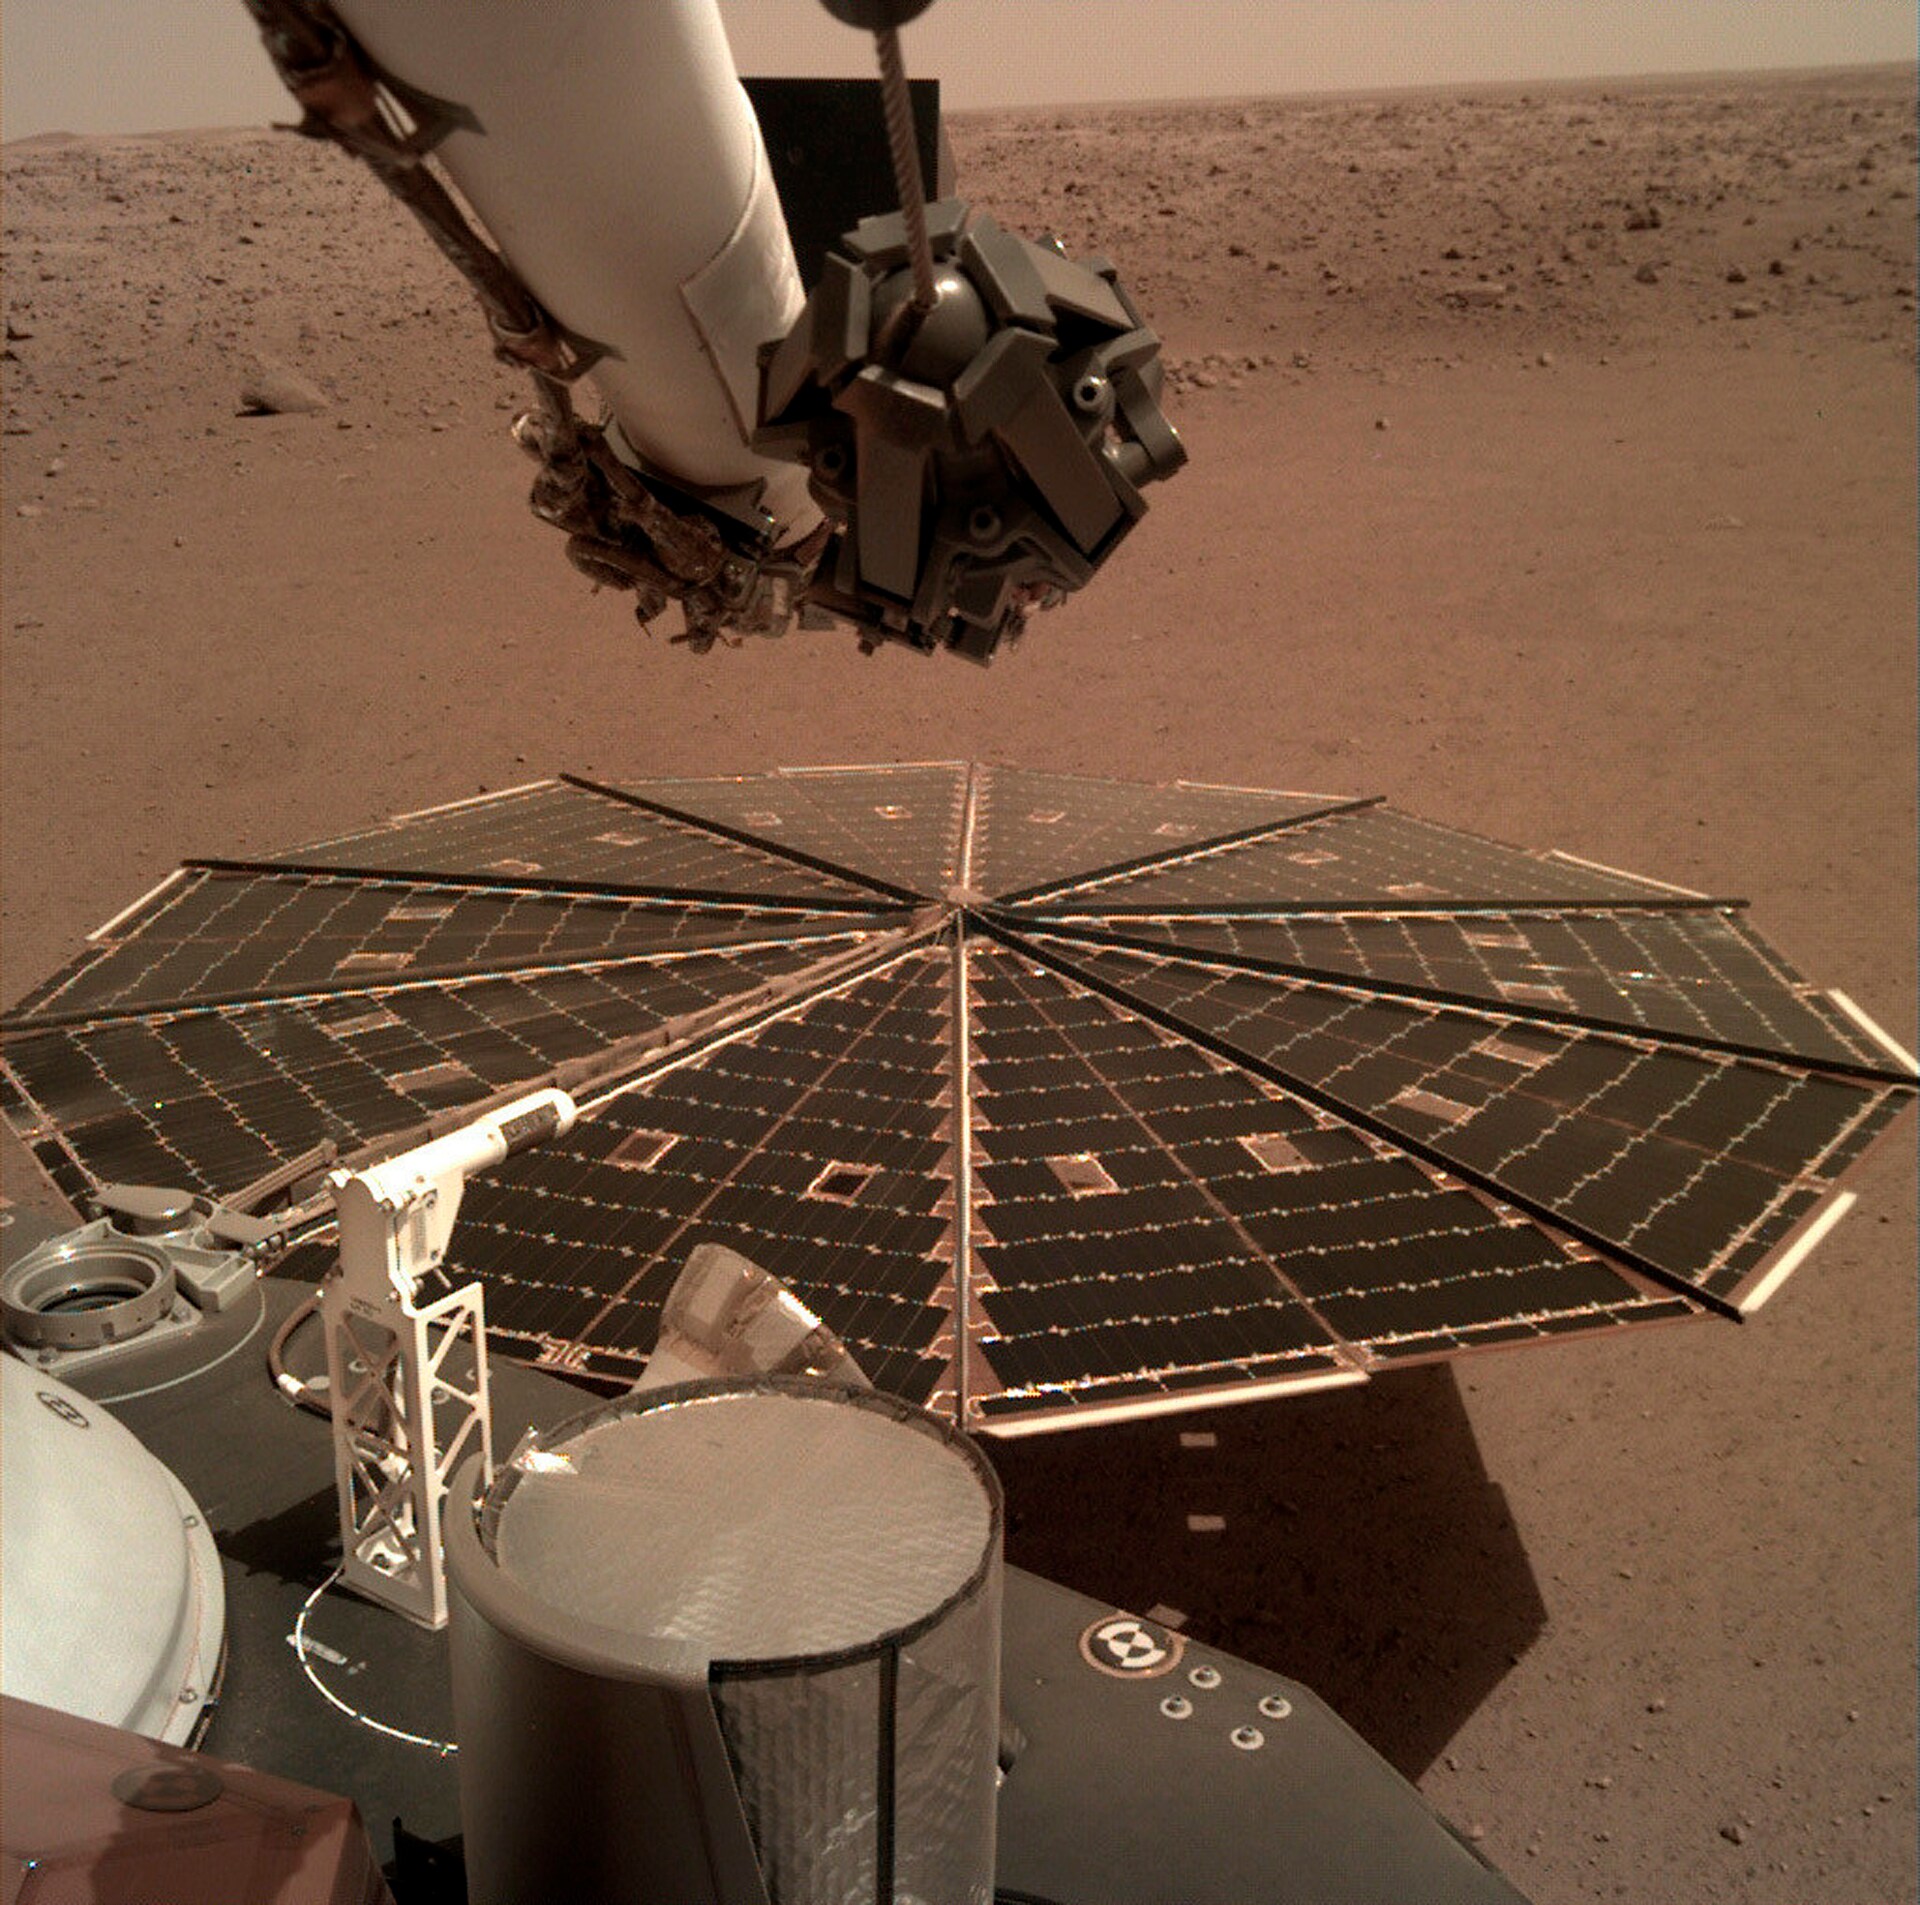 Foto scattata dal Lander Insight sulla superfice di Marte